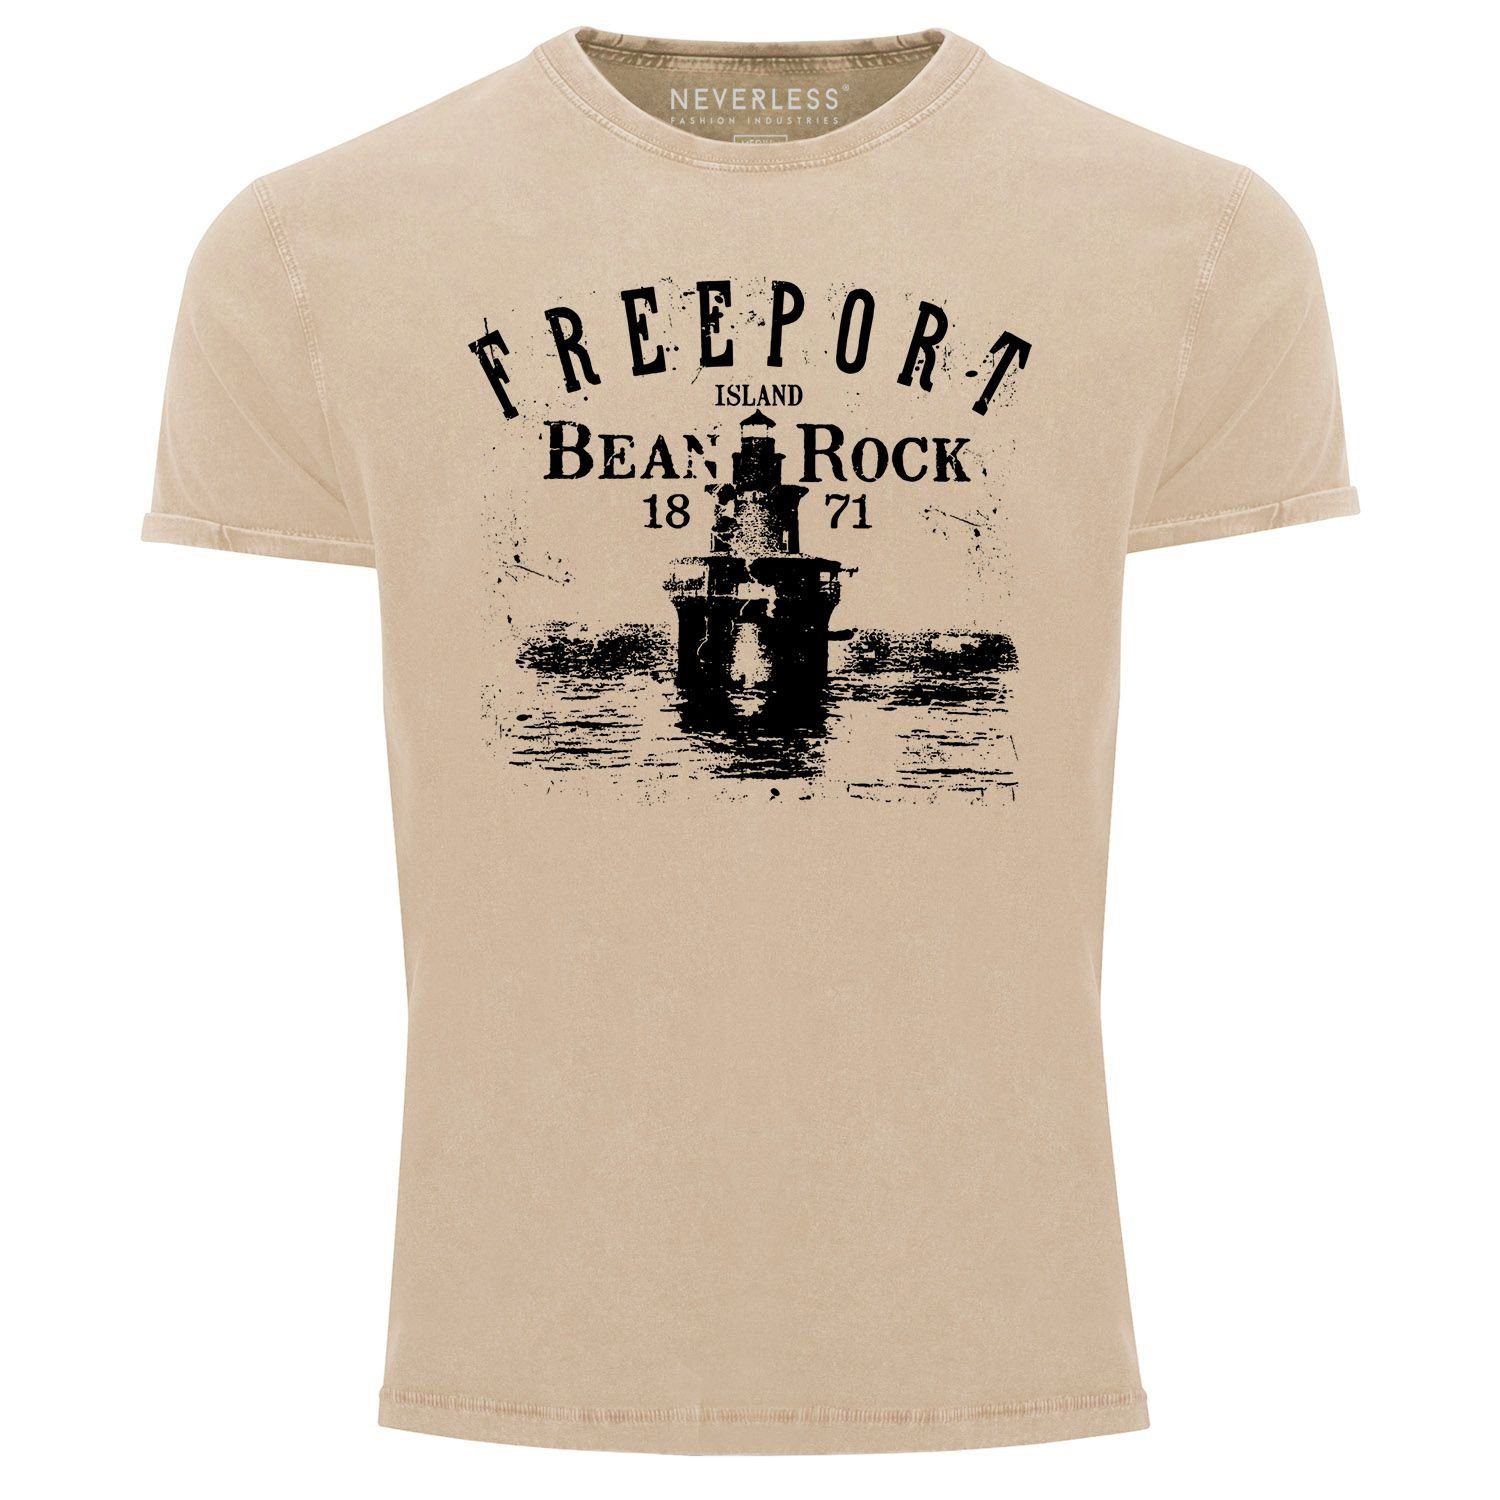 Neverless Print-Shirt Herren Vintage Shirt Retro Print Leuchturm Schriftzug Freeport Island Neverless® mit Print natur